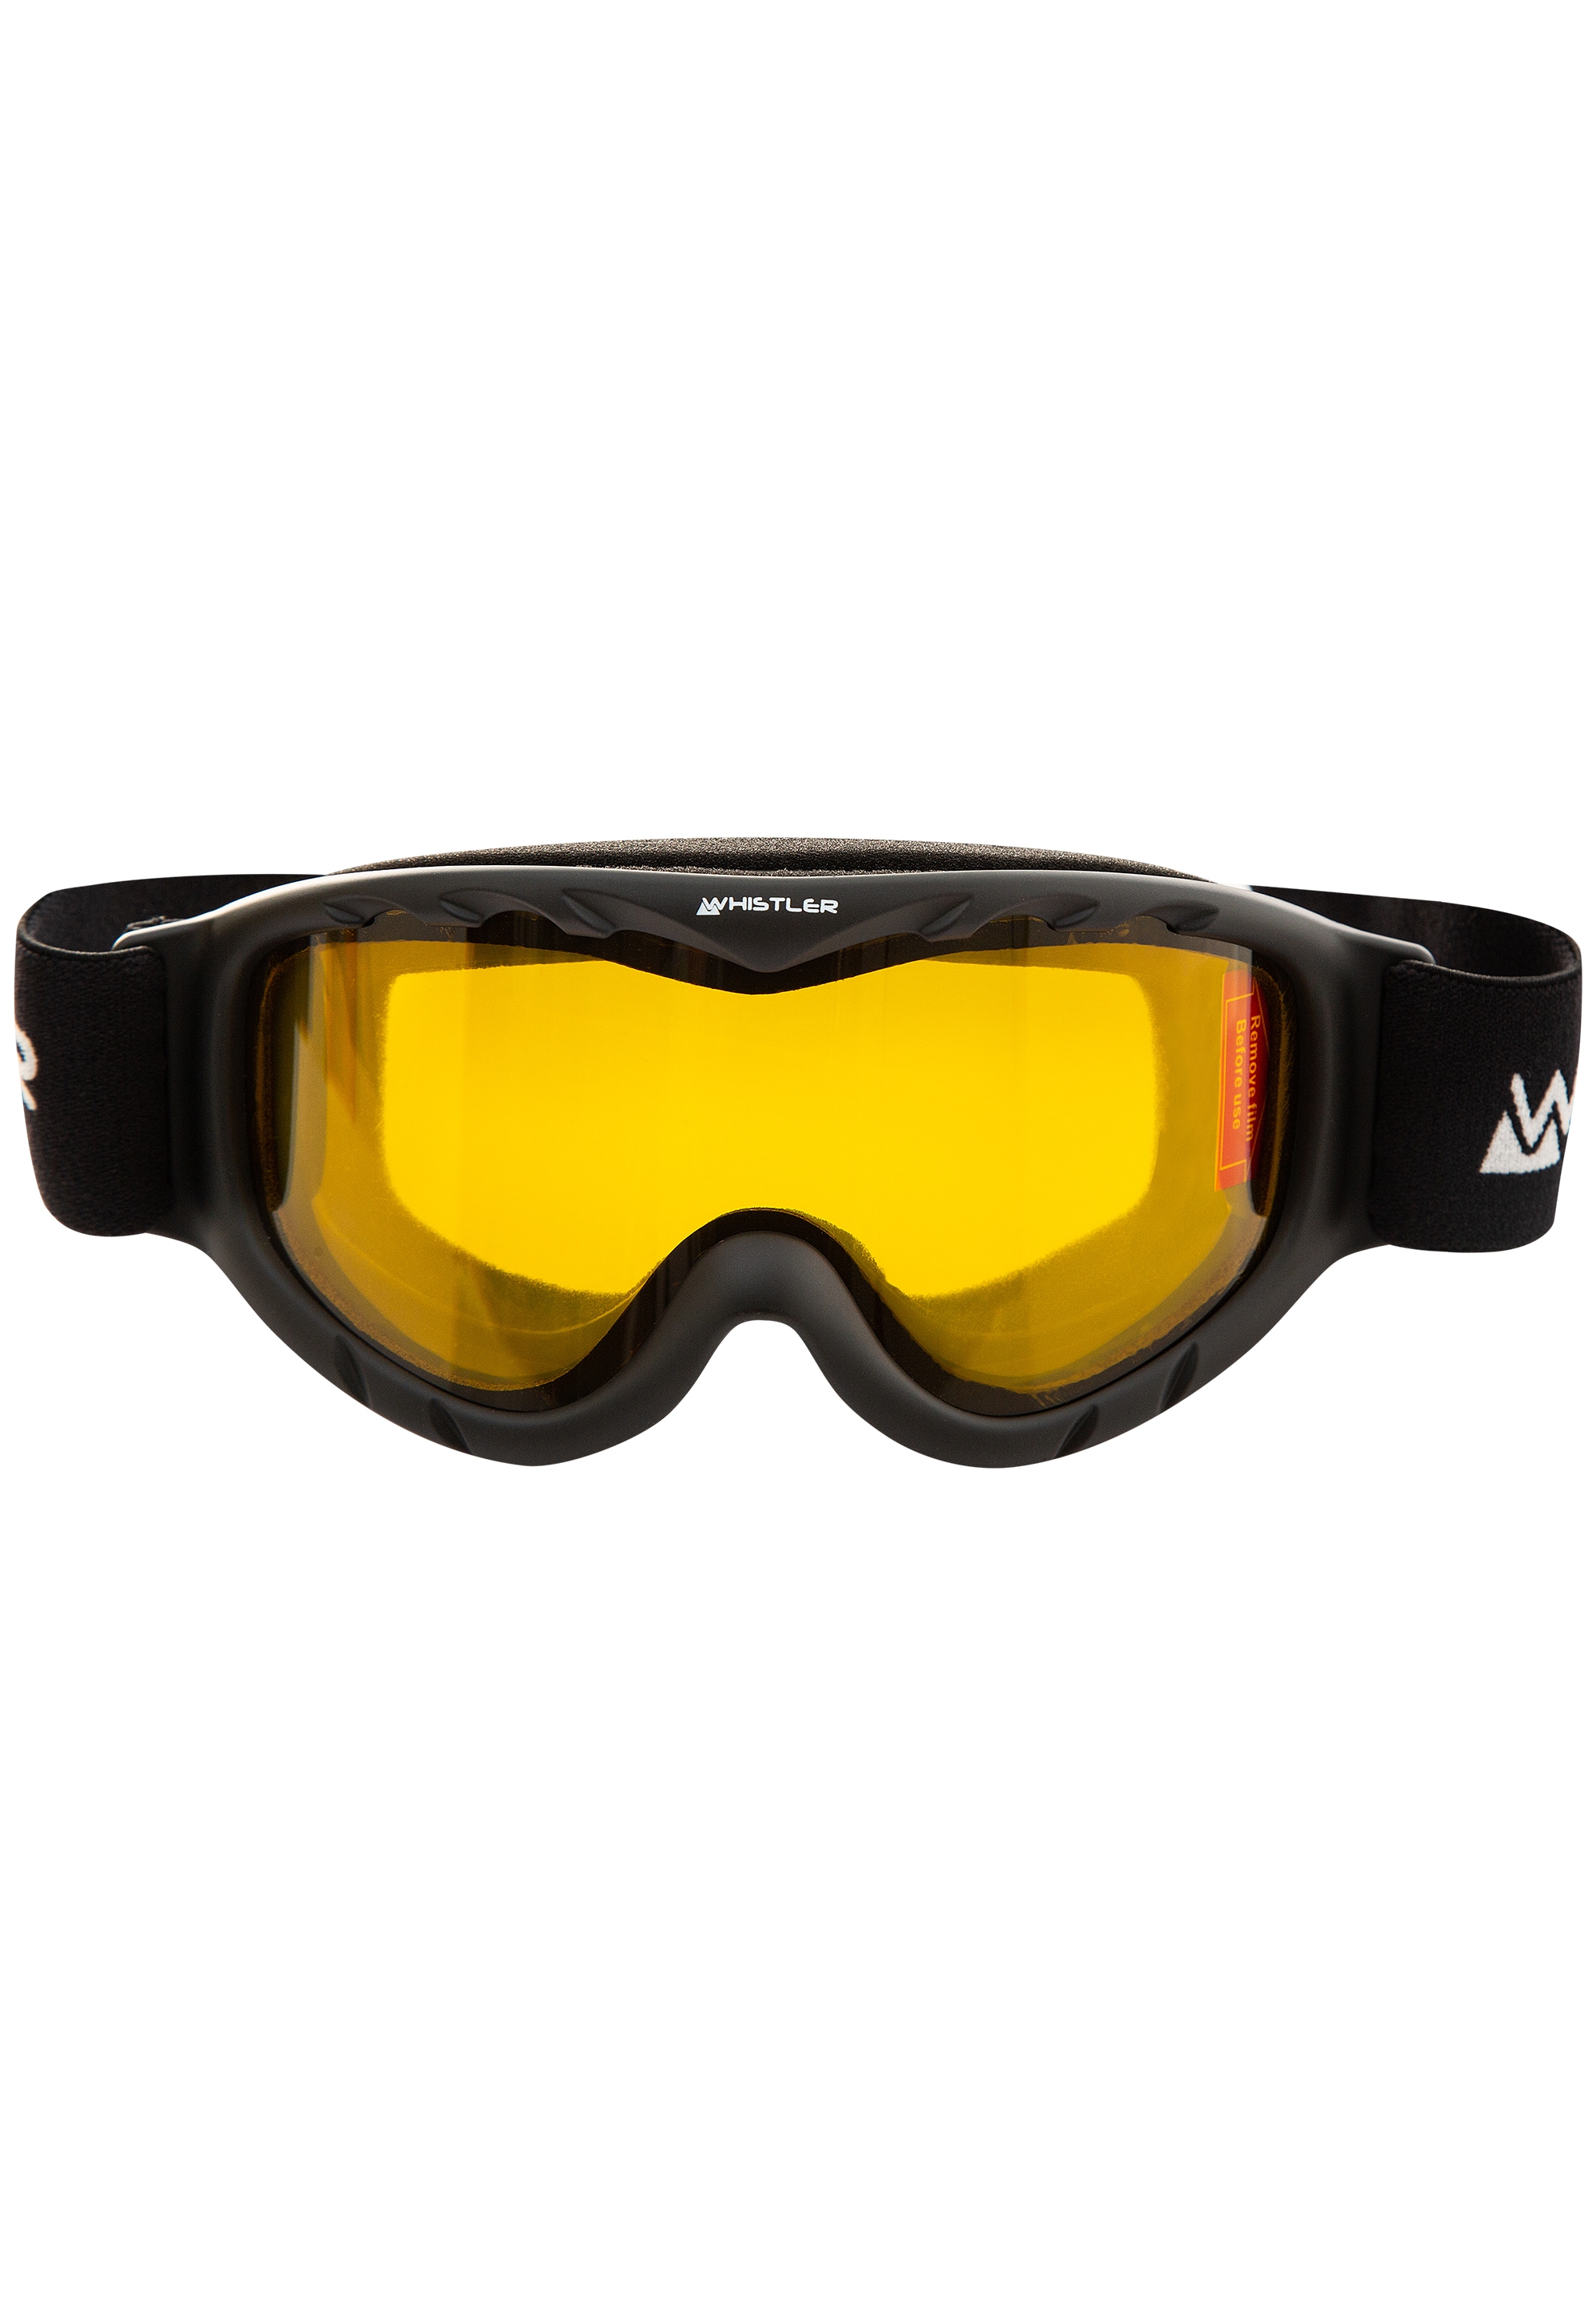 WHISTLER Skibrille kaufen Goggle«, BAUR Jr. Ski »WS300 online Anti-Fog-Beschichtung | mit Rechnung auf